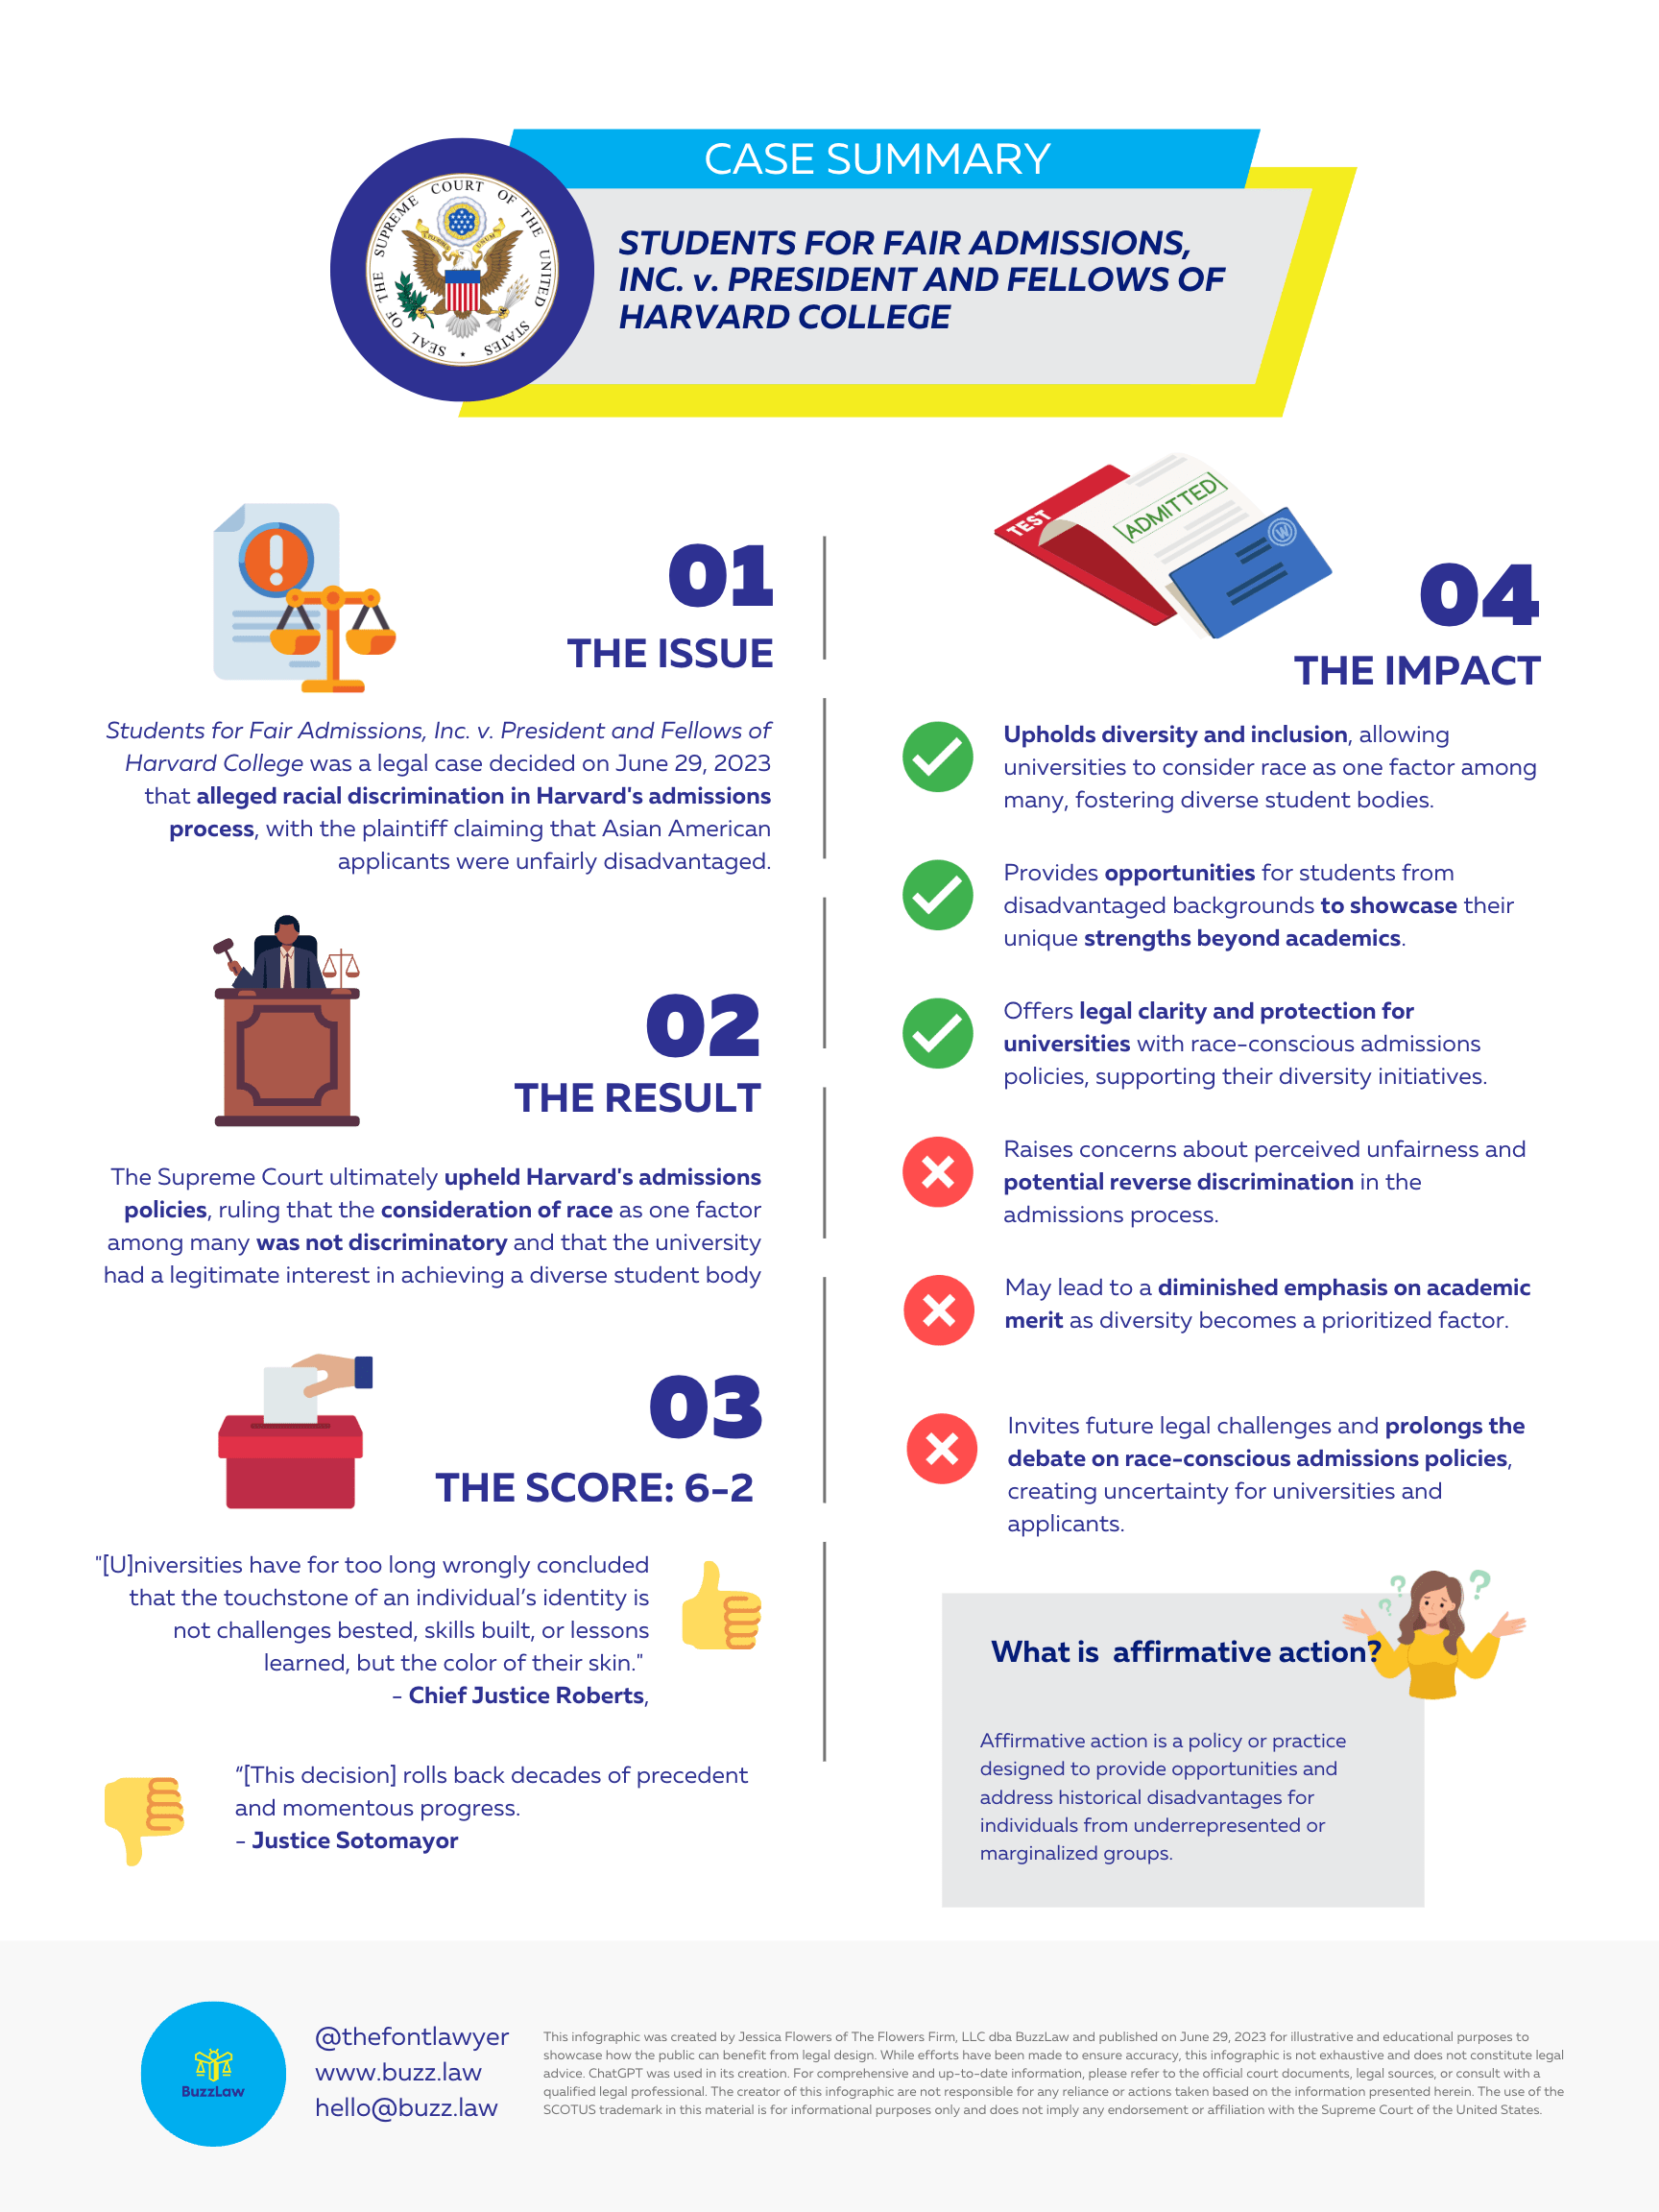 SCOTUS Infographic